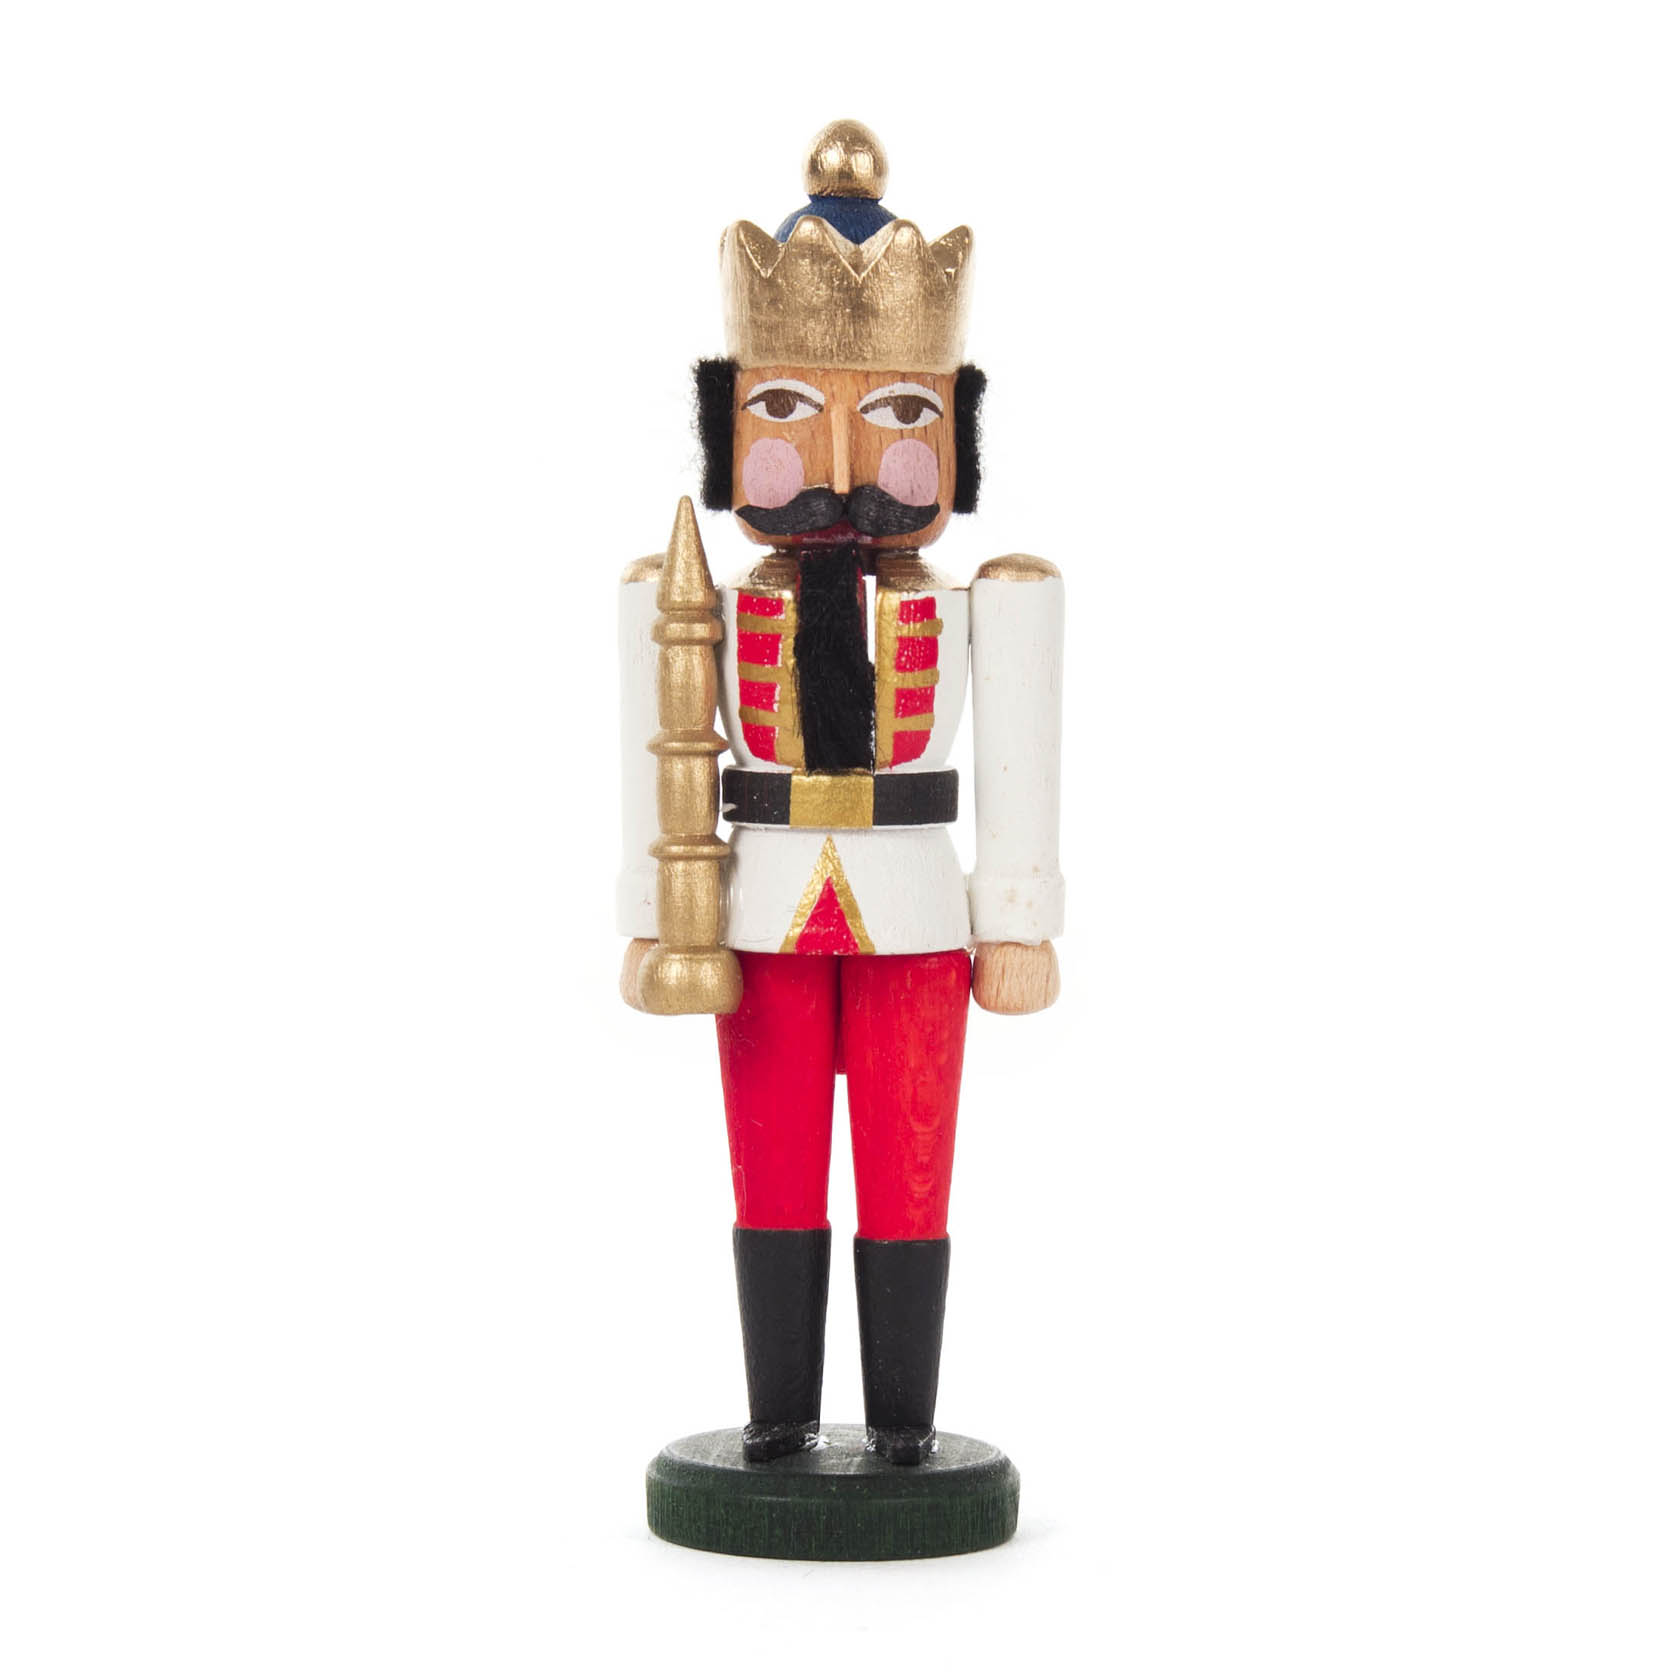 Mini-Nussknacker König weiß-rot, 8cm im Dregeno Online Shop günstig kaufen